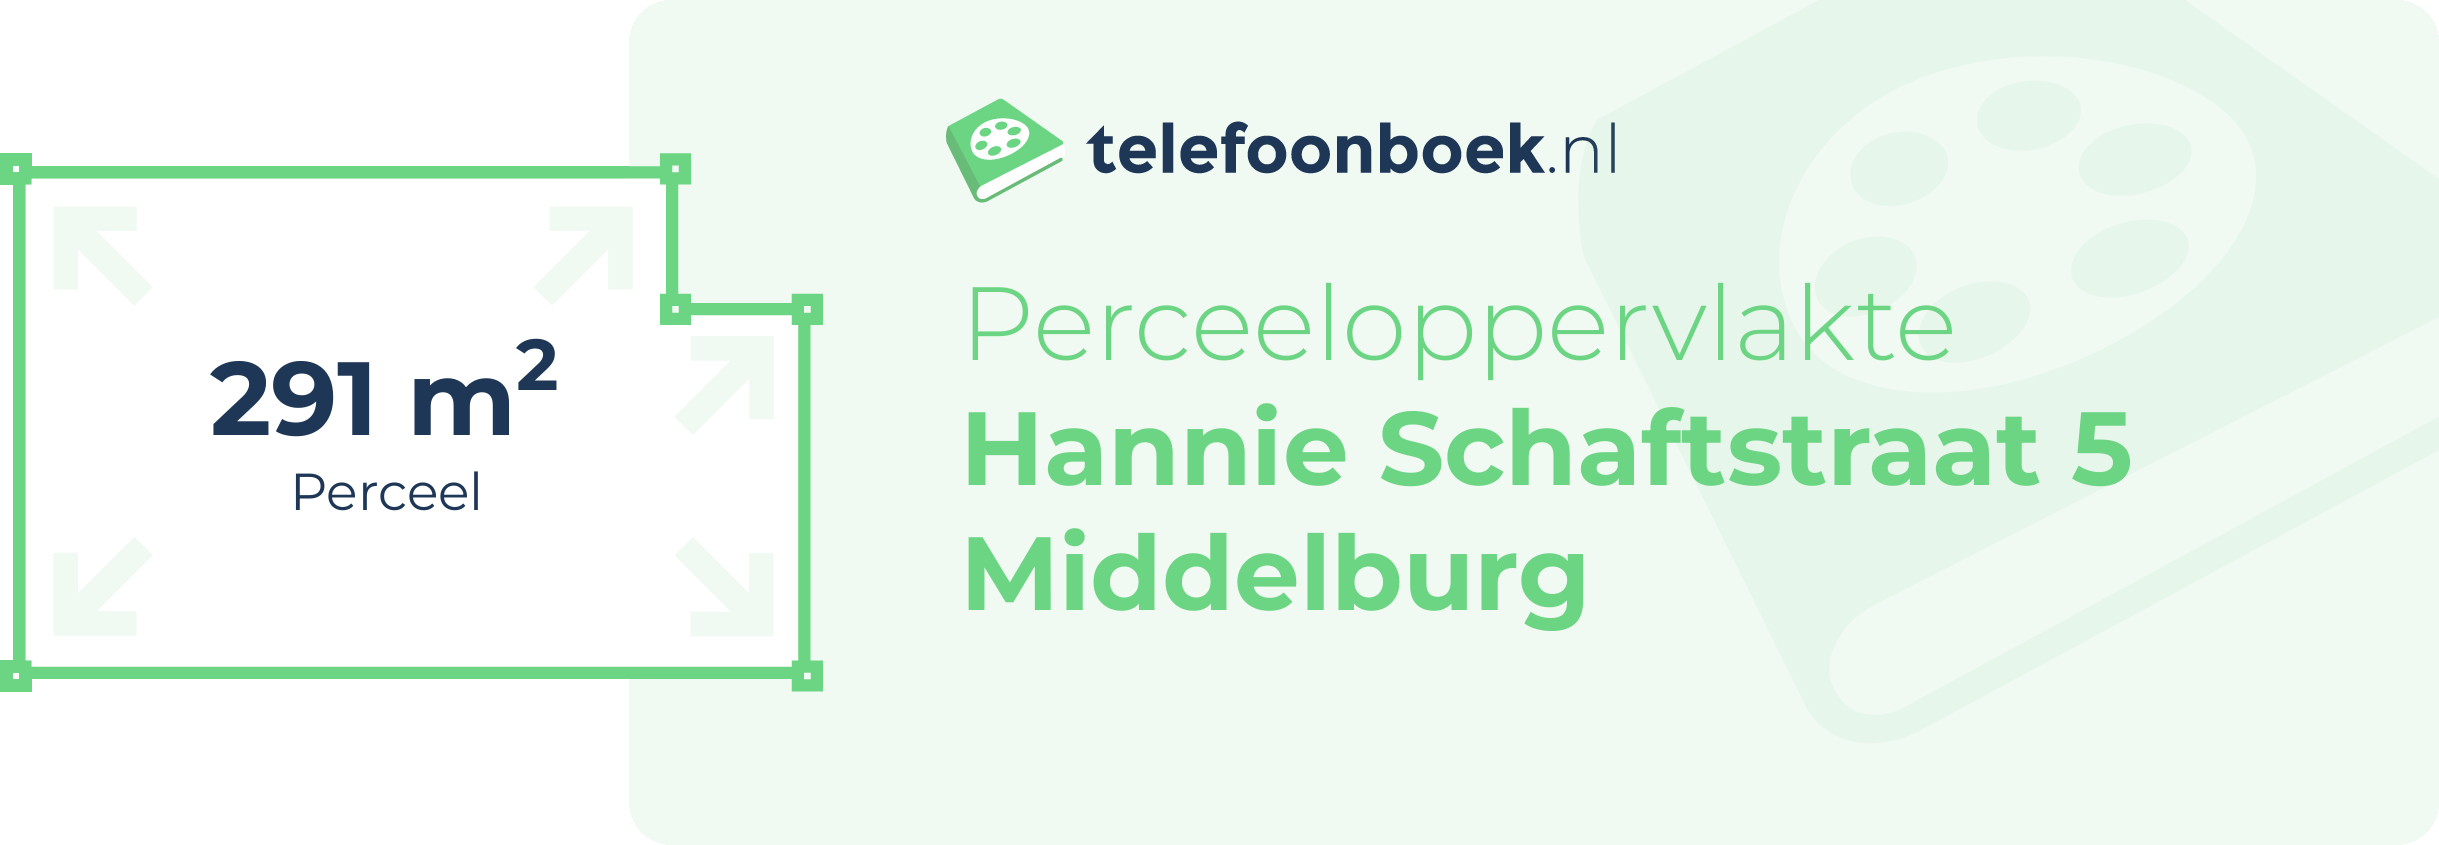 Perceeloppervlakte Hannie Schaftstraat 5 Middelburg